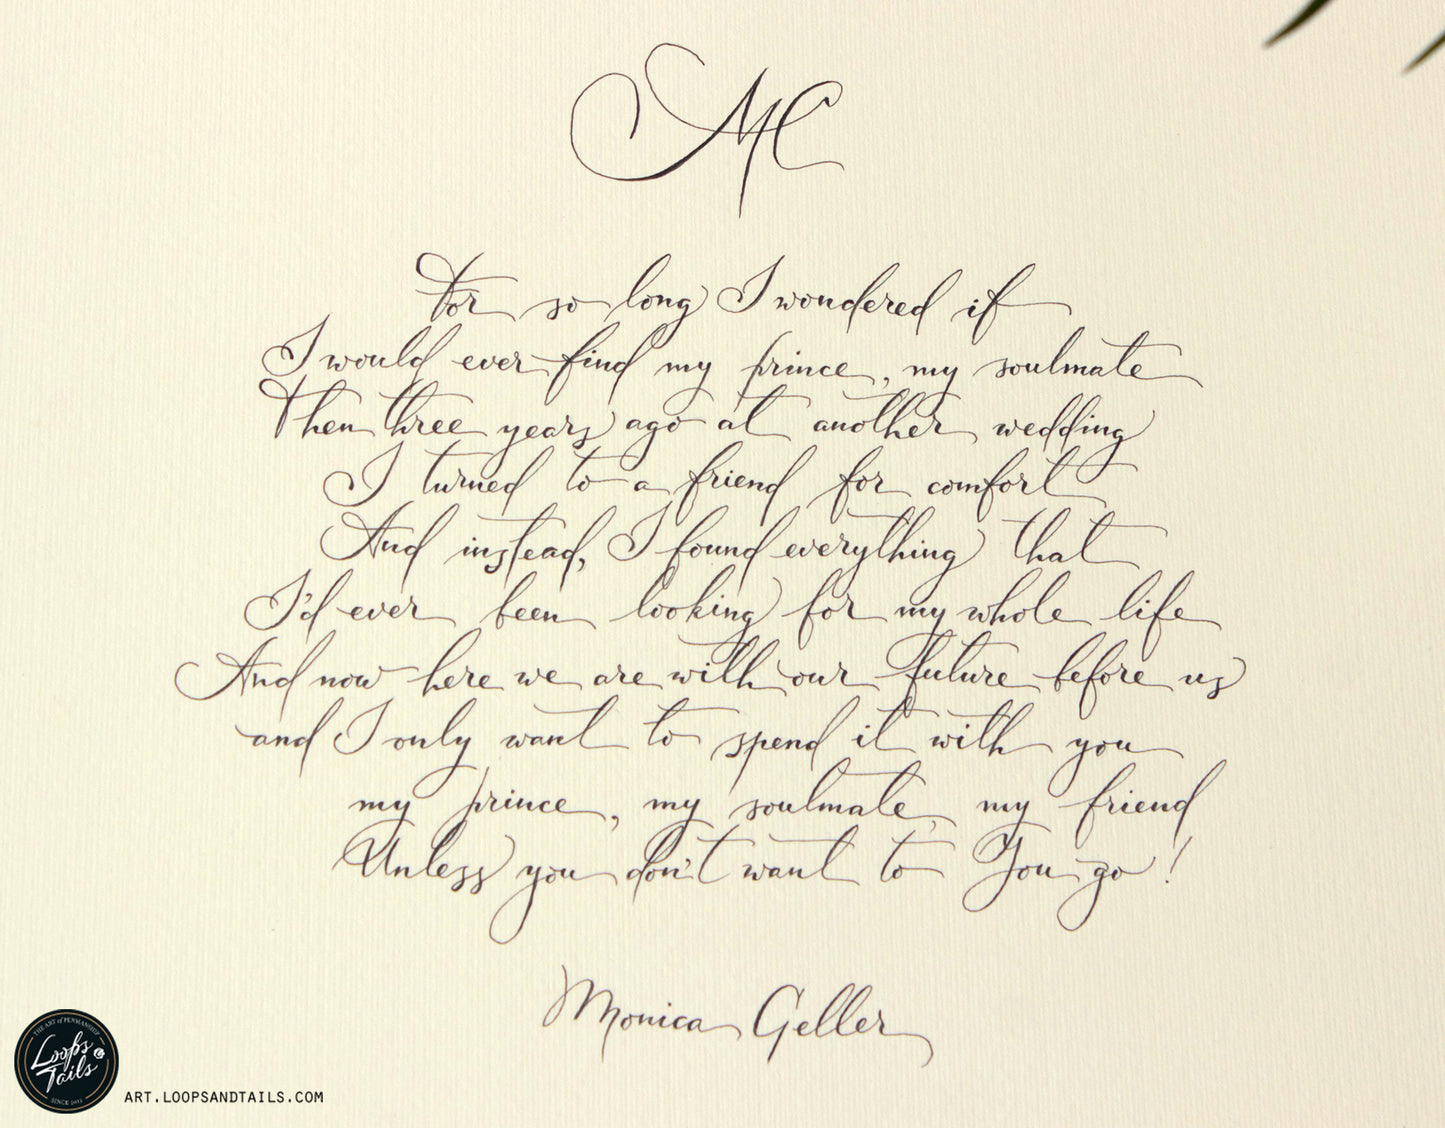 Monica Geller's wedding vows